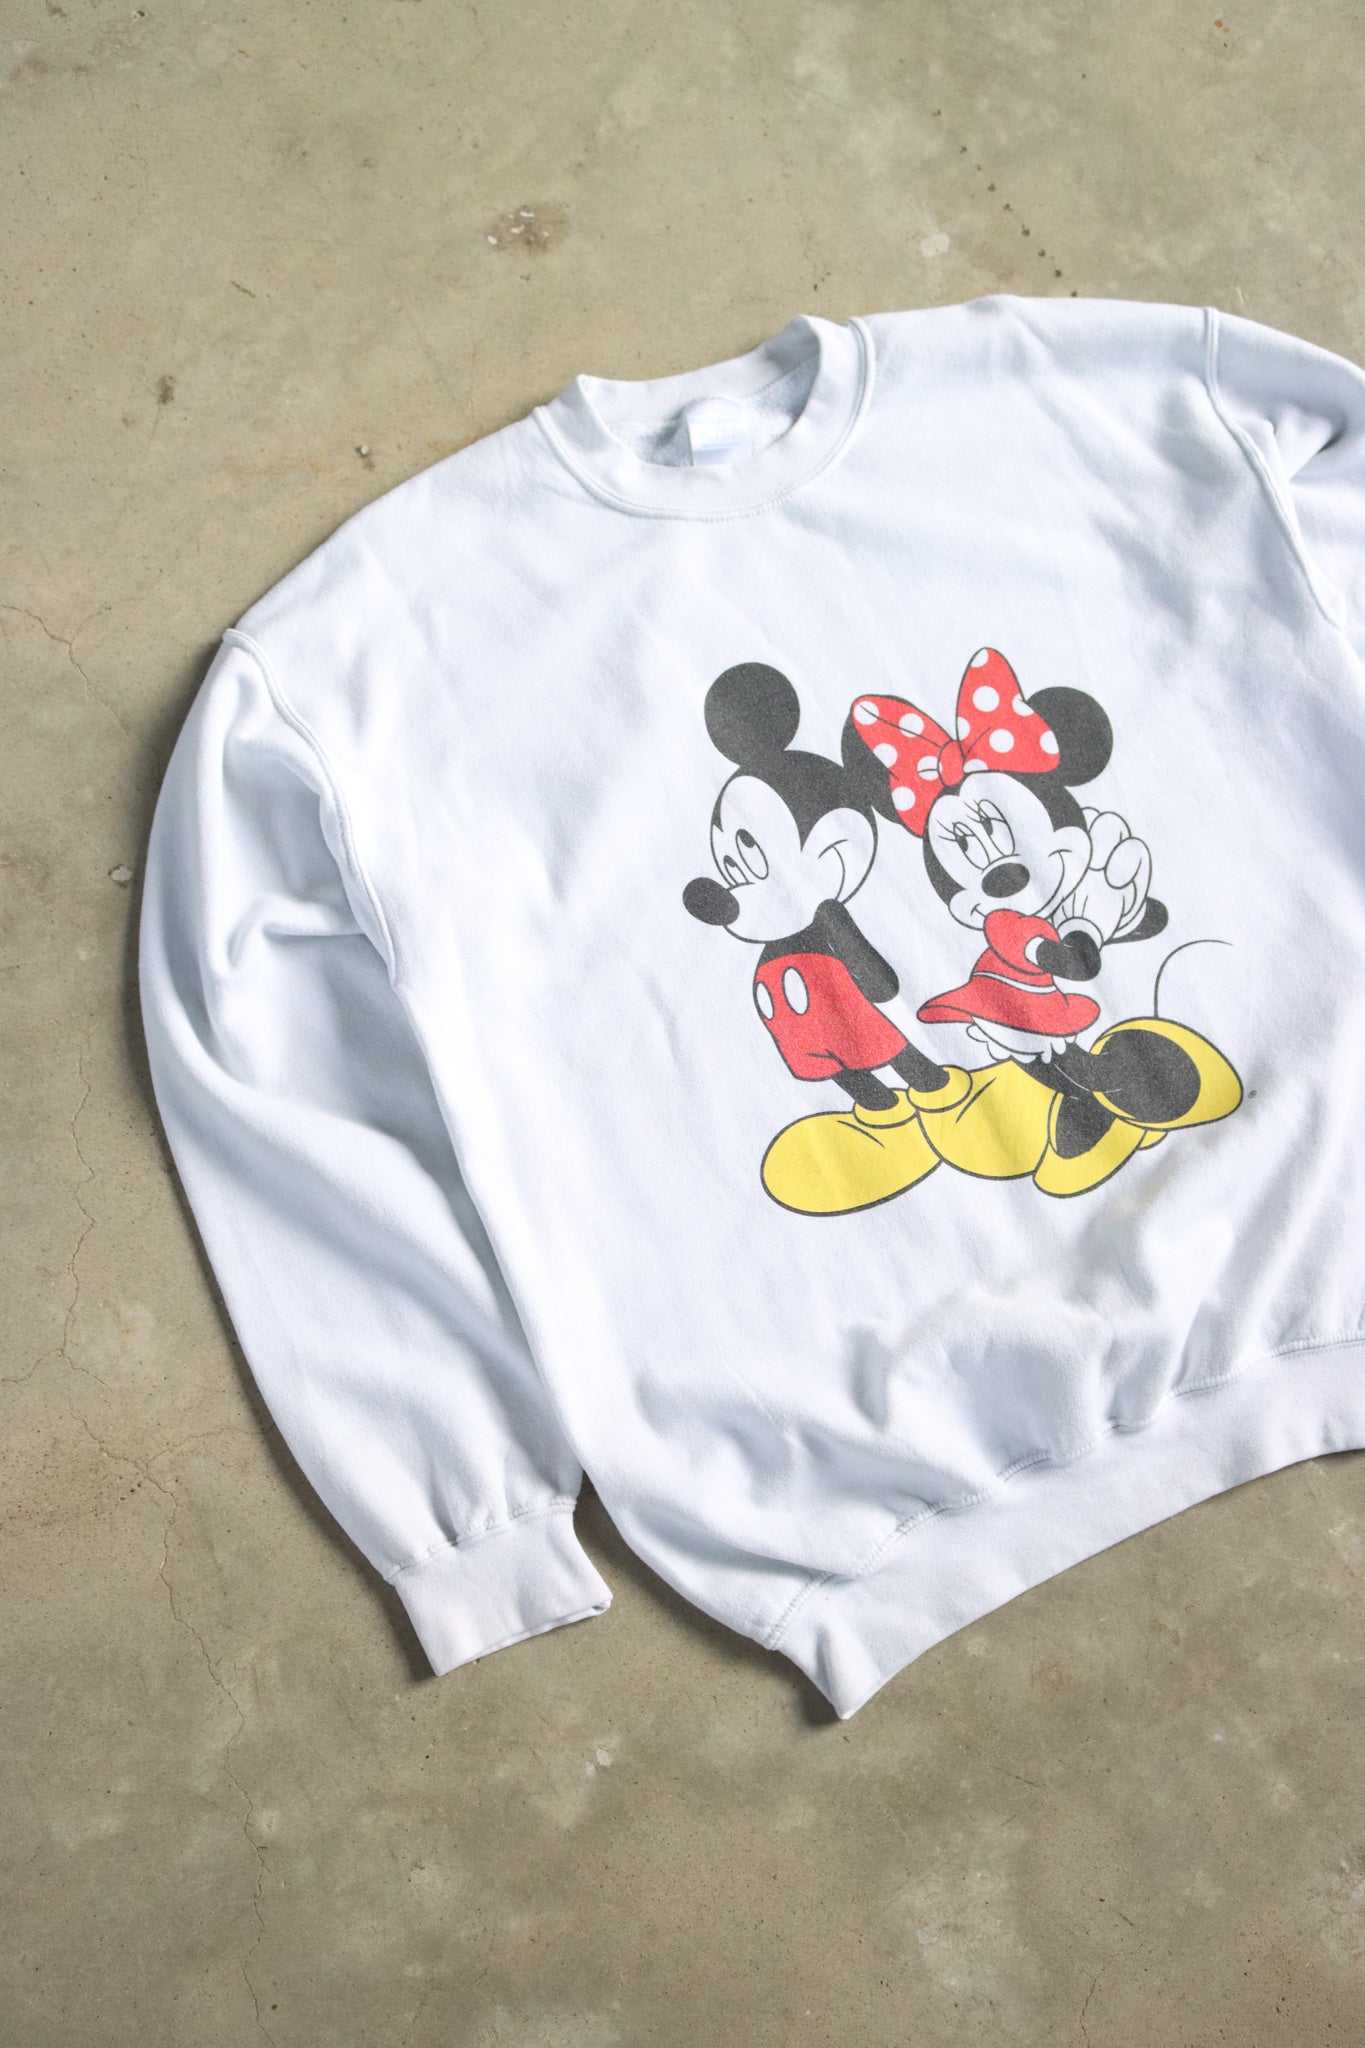 Vintage Mickey & Minnie Sweater Large